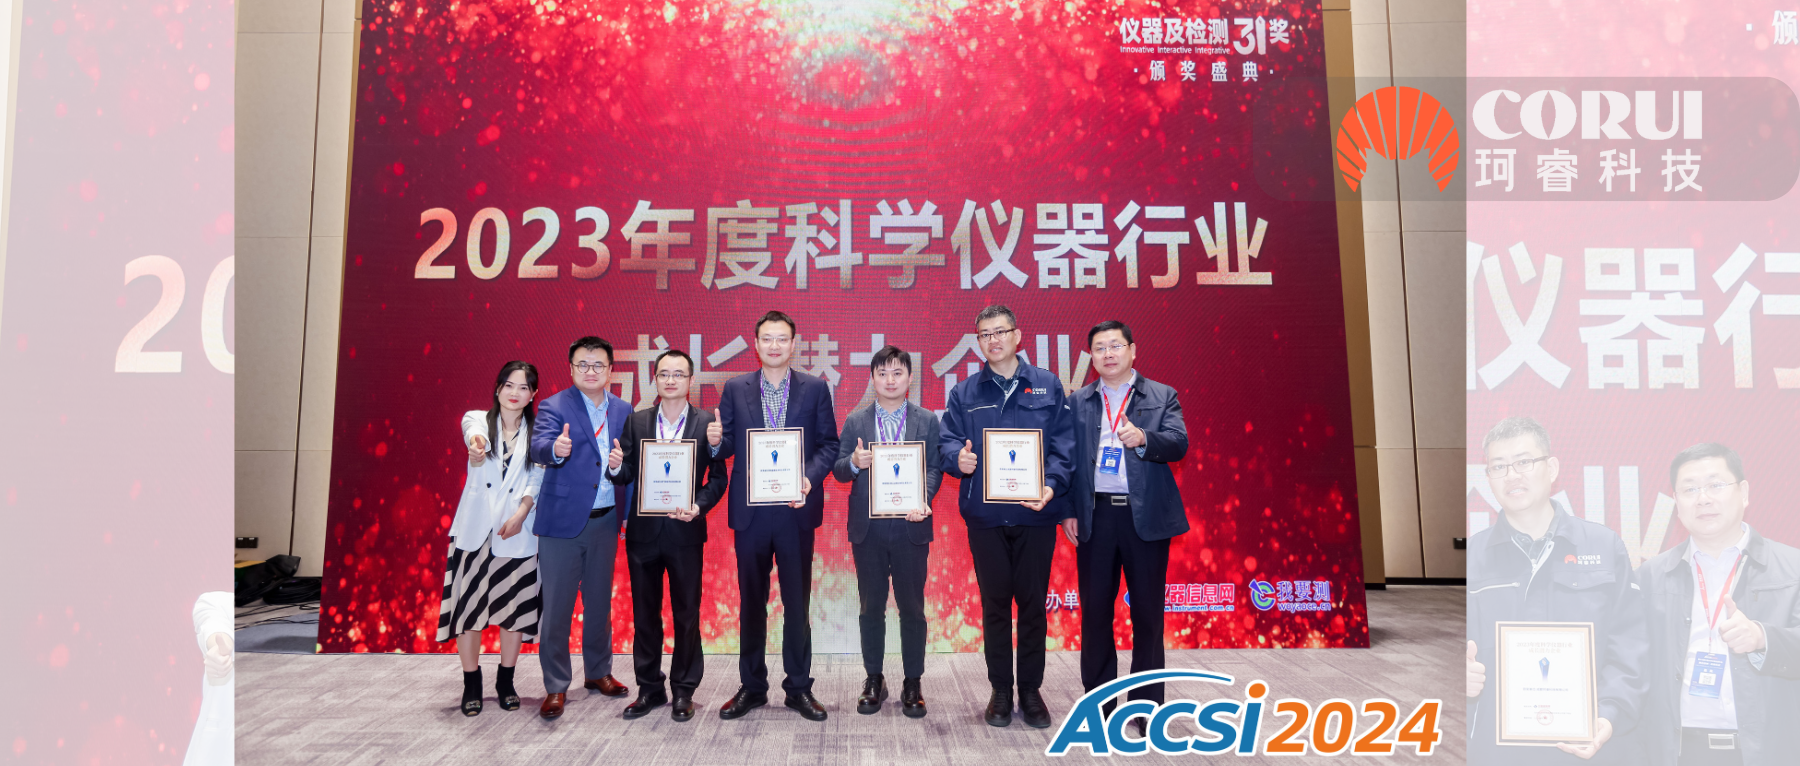 ACCSI2024珂睿科技入围科学仪器行业投资潜力榜单并荣获成长潜力企业奖！